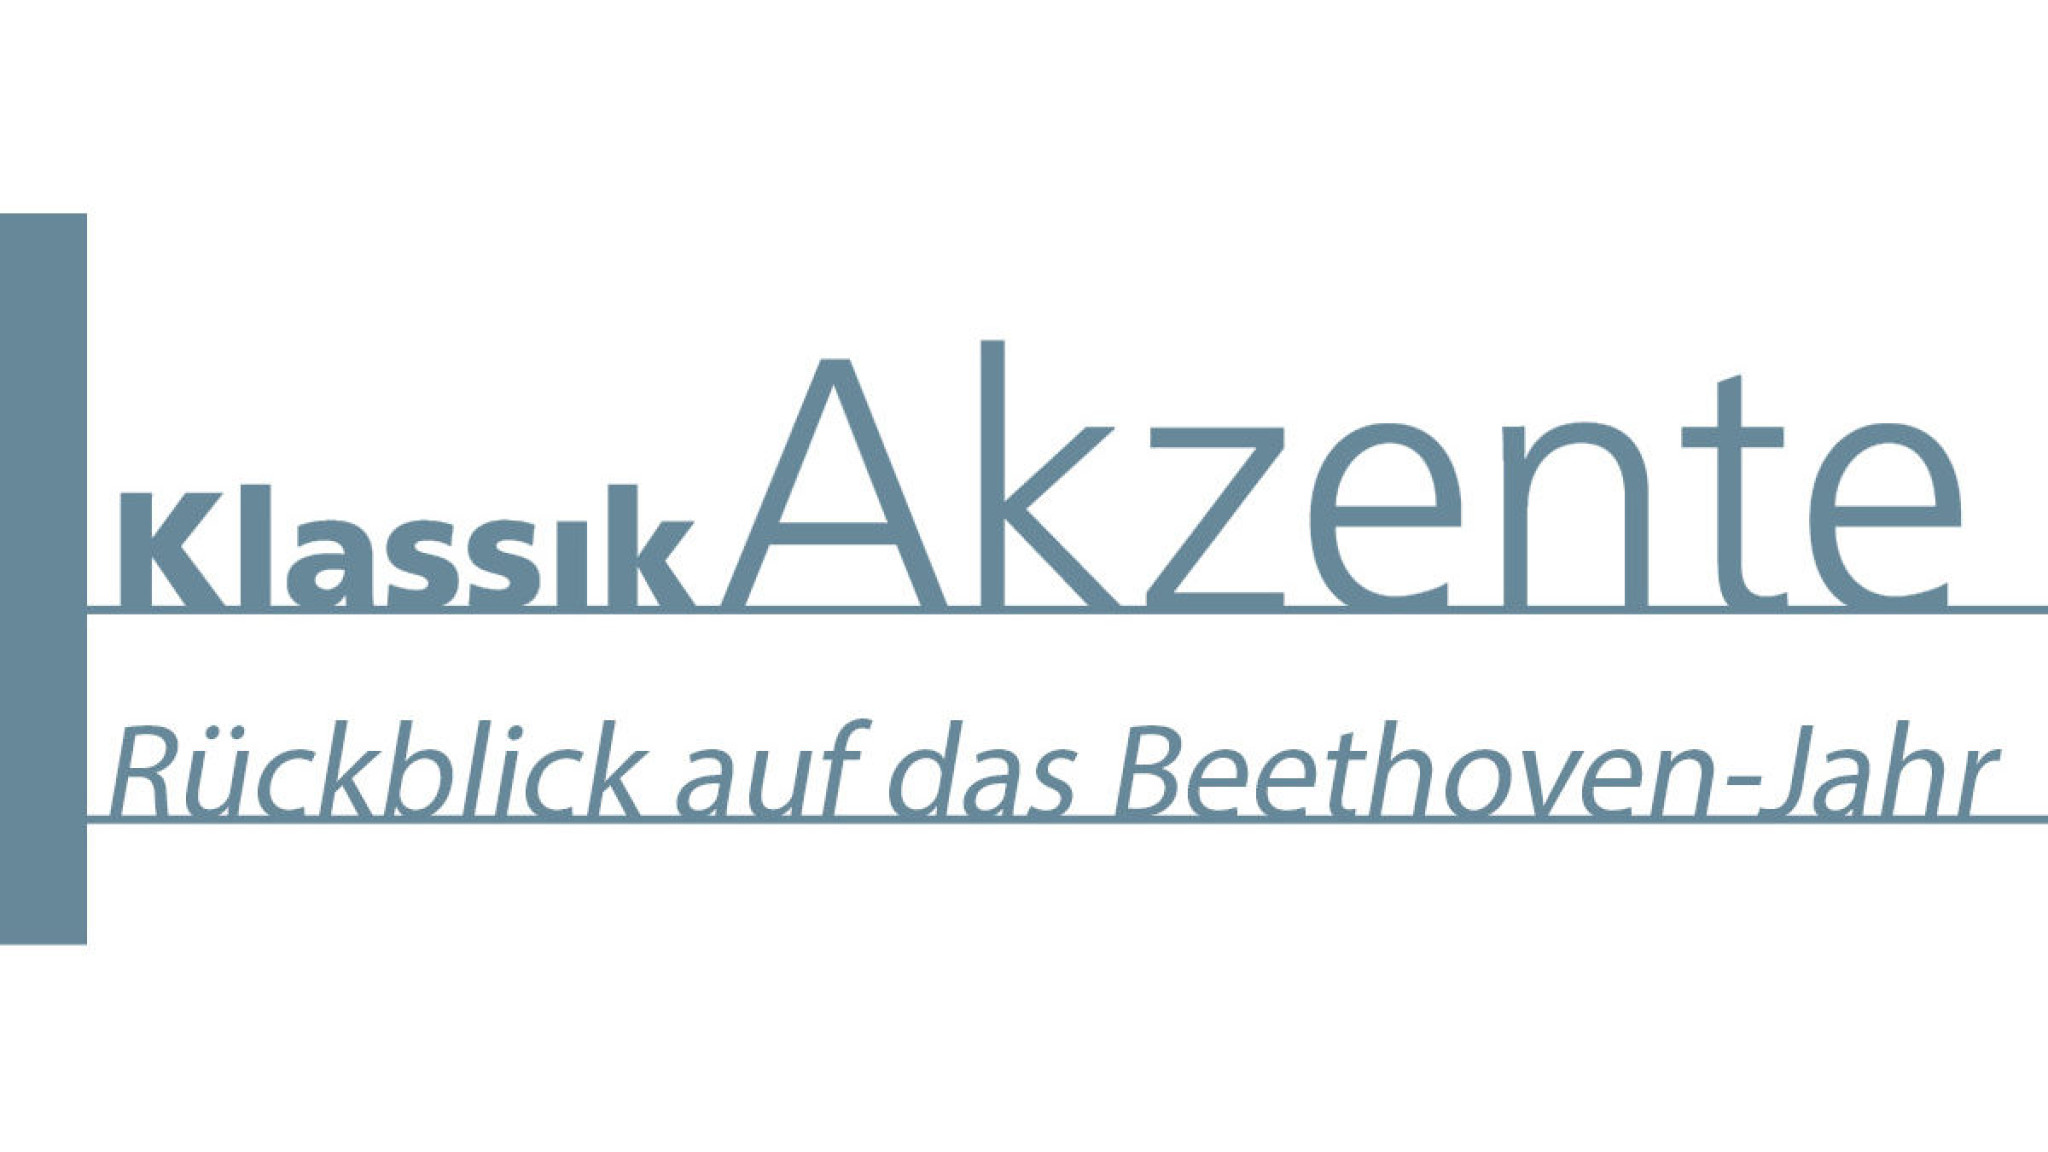 KlassikAkzente Rückblick auf das Beethoven-Jahr 2020